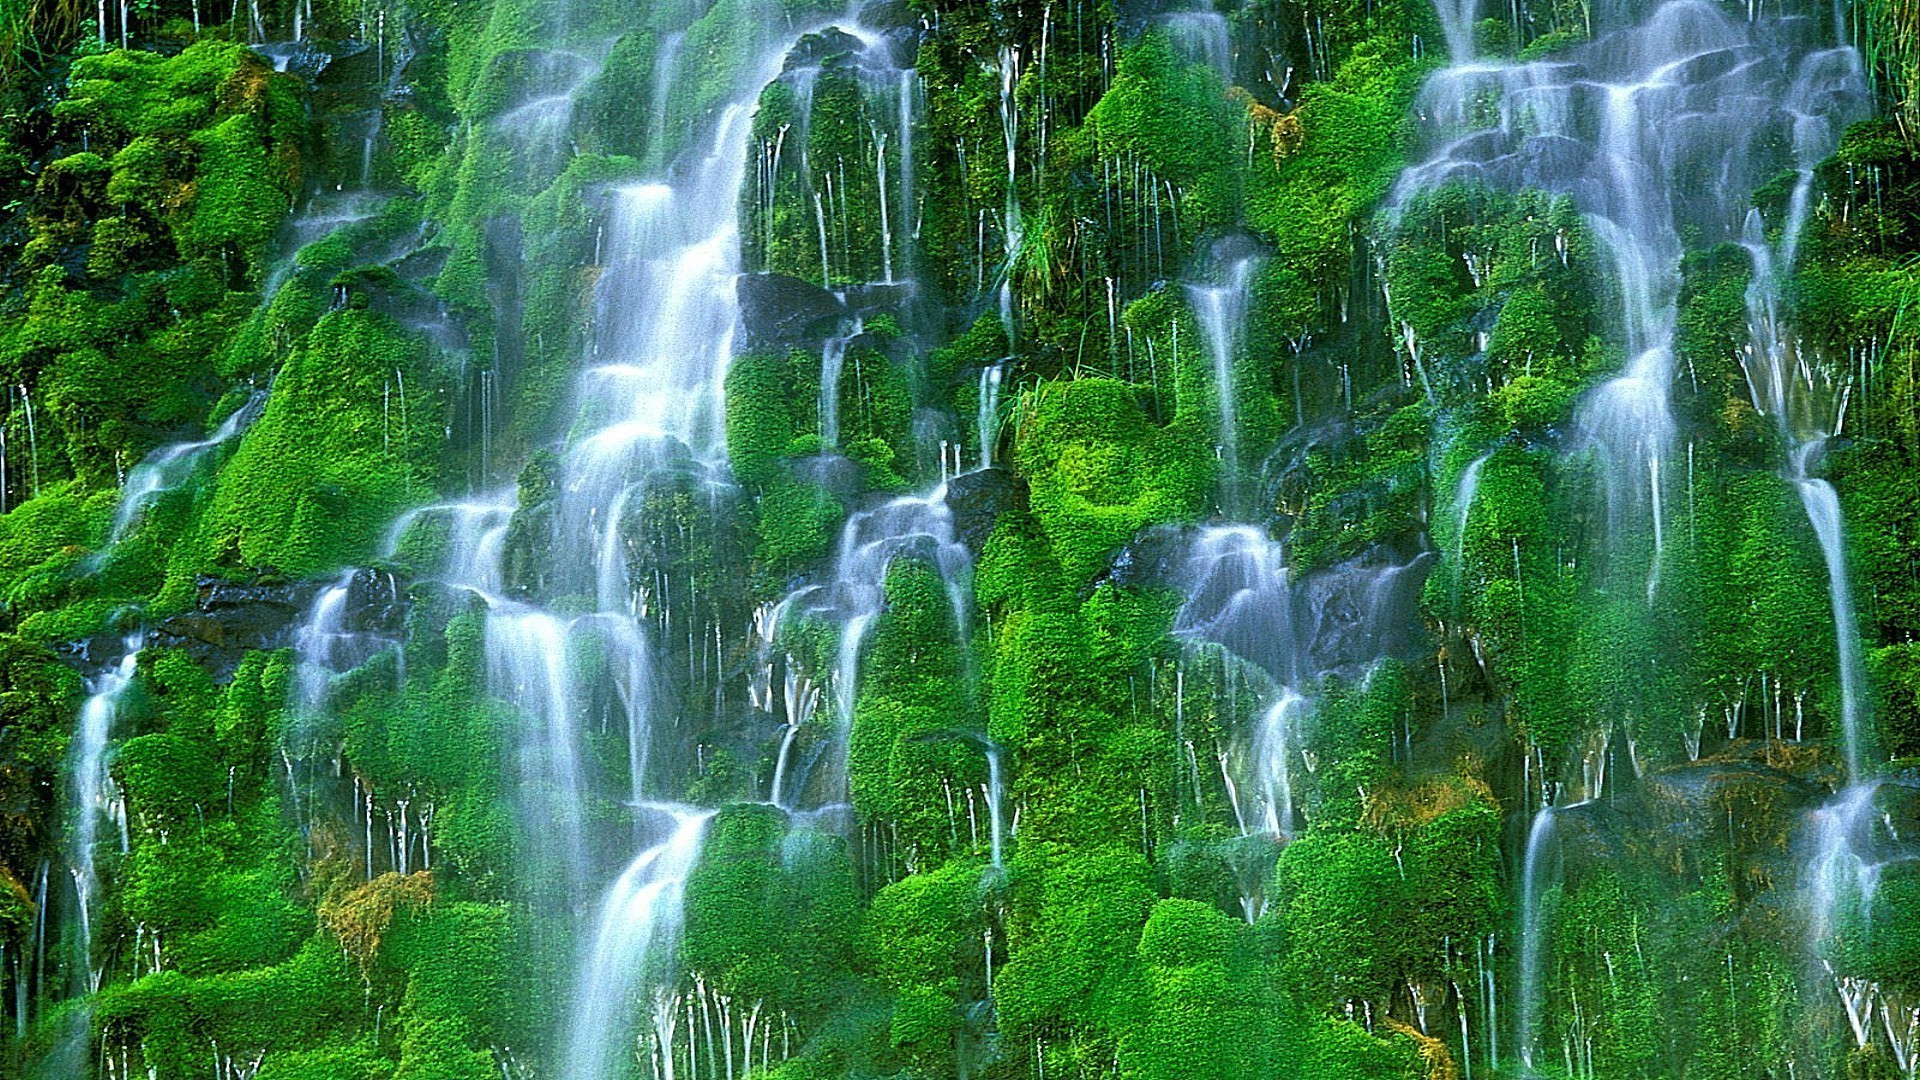 водопады природа водопад древесины воды лист мокрый пышные мох лето чистота среды каскад чистые на открытом воздухе экология тропический рок дикий трава